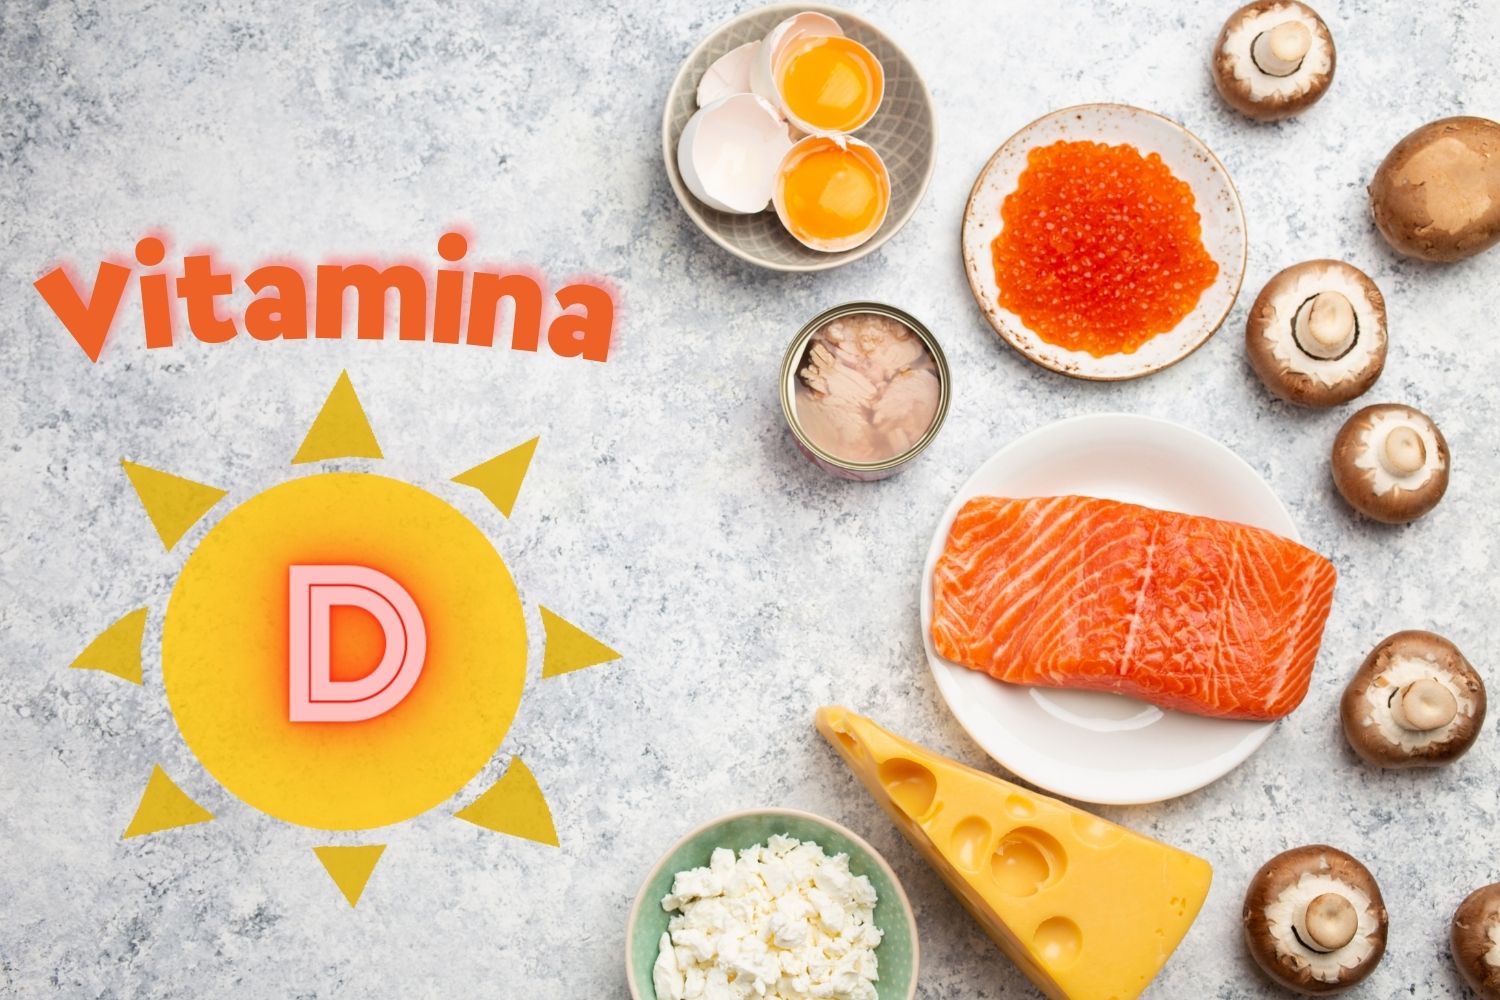 Vitamina D - tudo o que você precisa saber sobre - Revista + Saúde - Guarapuava